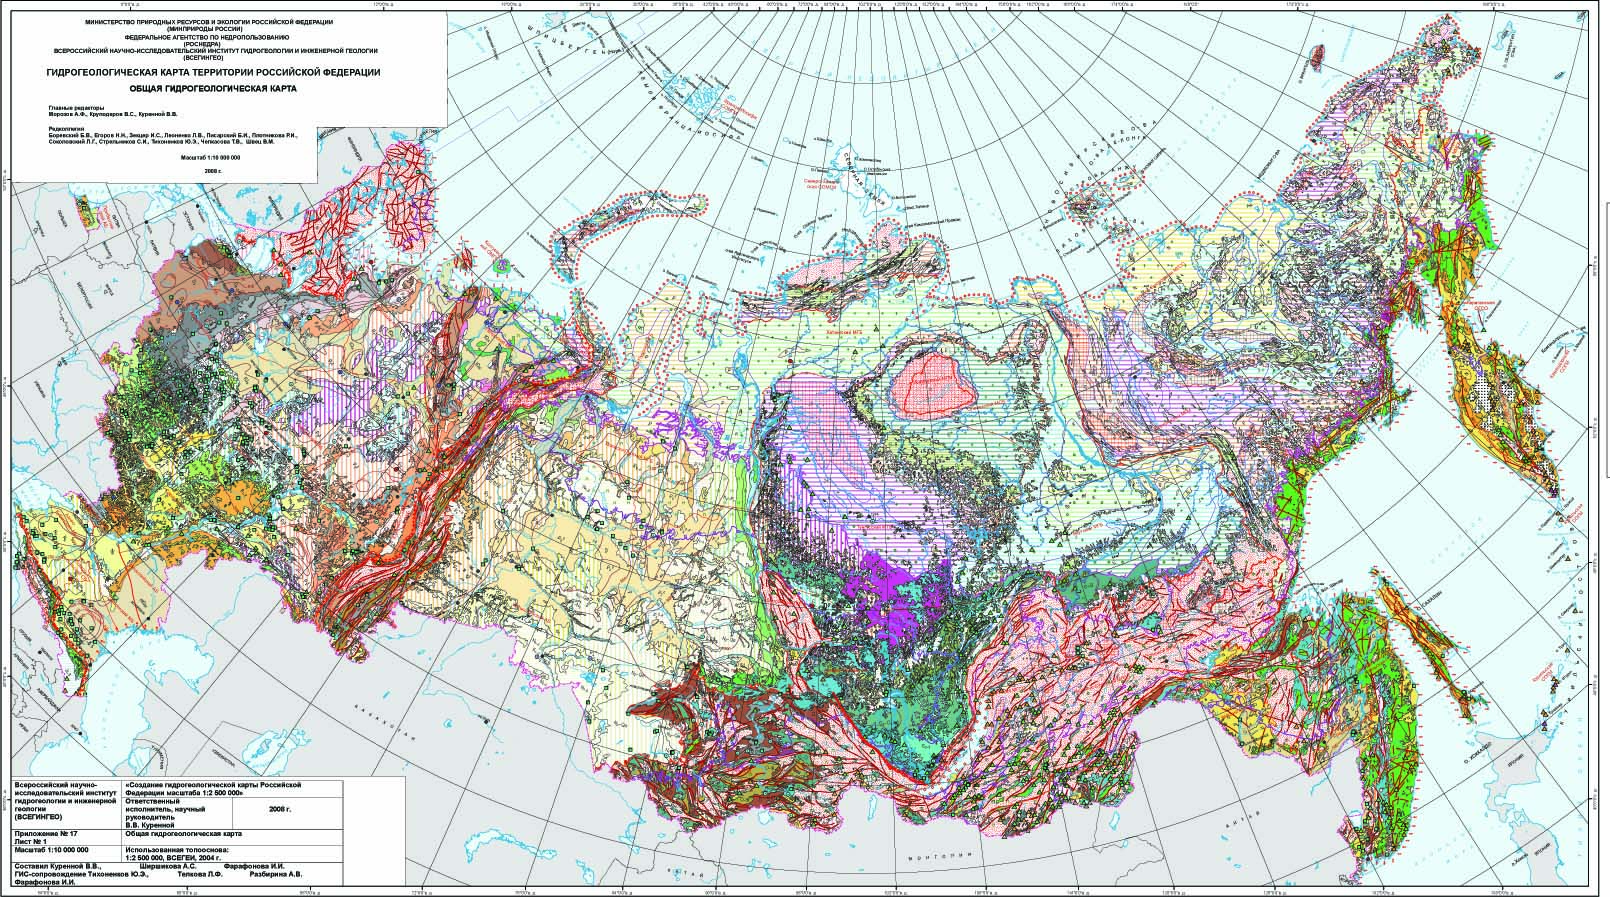 Гидрогеологическая карта самарской области